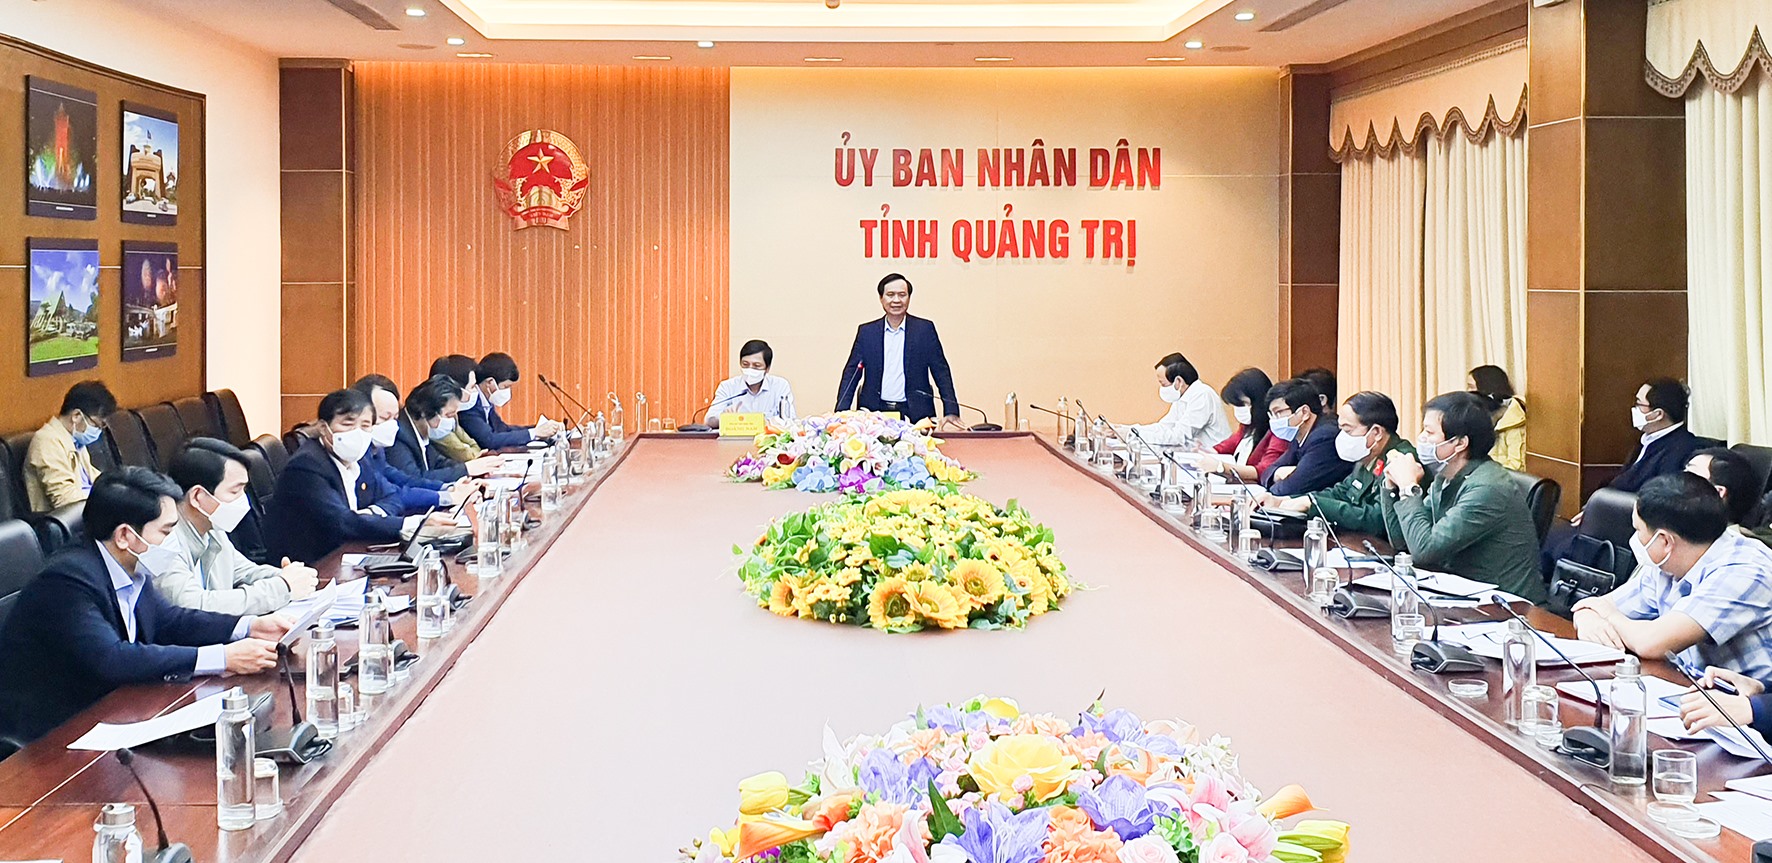 Chủ tịch UBND tỉnh Võ Văn Hưng khẳng định quyết tâm phải đưa học sinh trở lại trường học tập trung nhưng phải đảm bảo an toàn - Ảnh: L.N